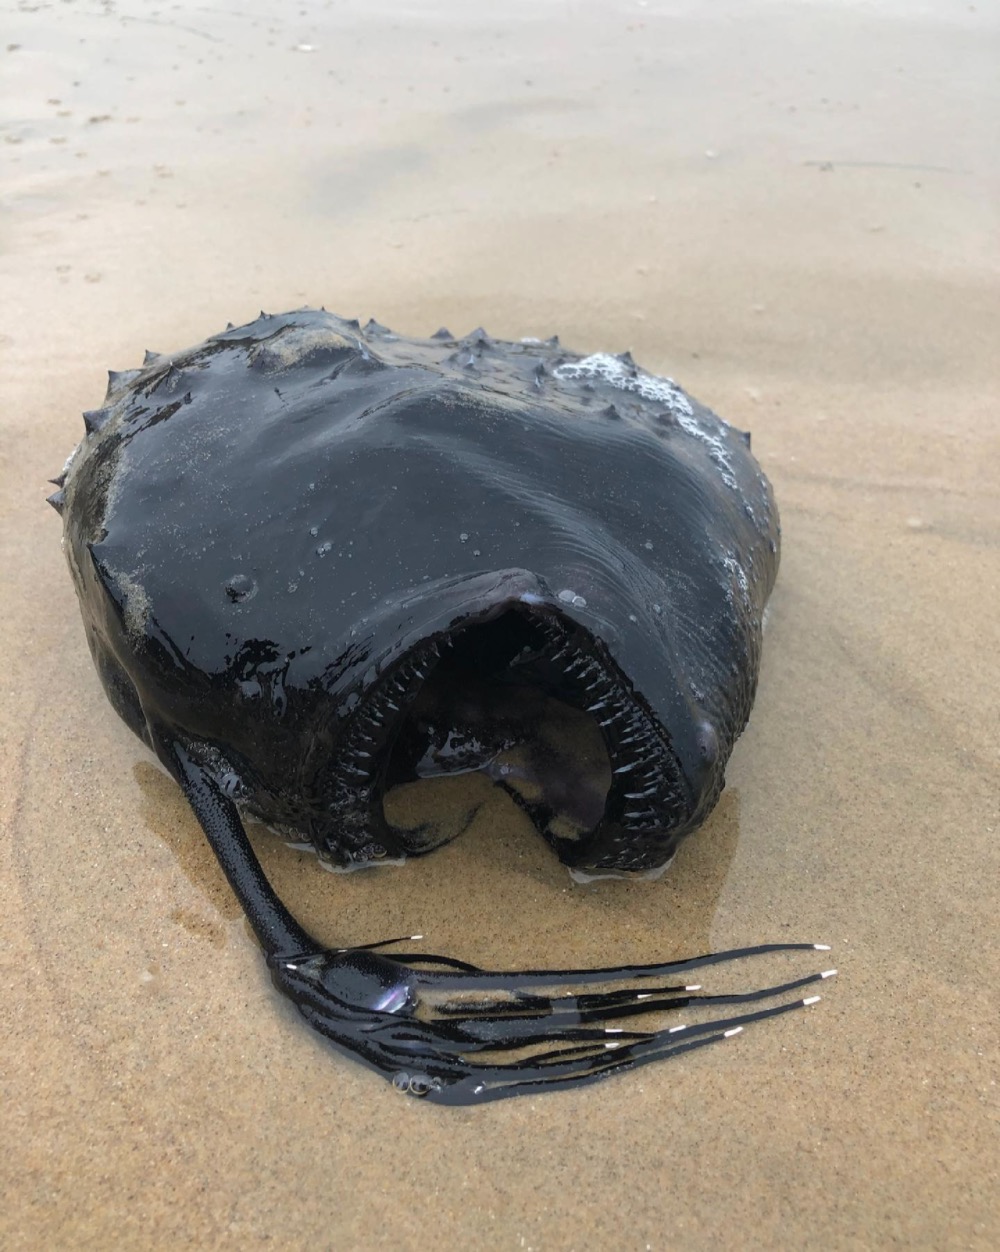 Ikan 'Rare' Dari Laut Dalam Ditemui Terdampar Di Pantai, Datangkan Keresahan Kerana Dianggap Bukan Satu Petanda Baik - sajagempak.com